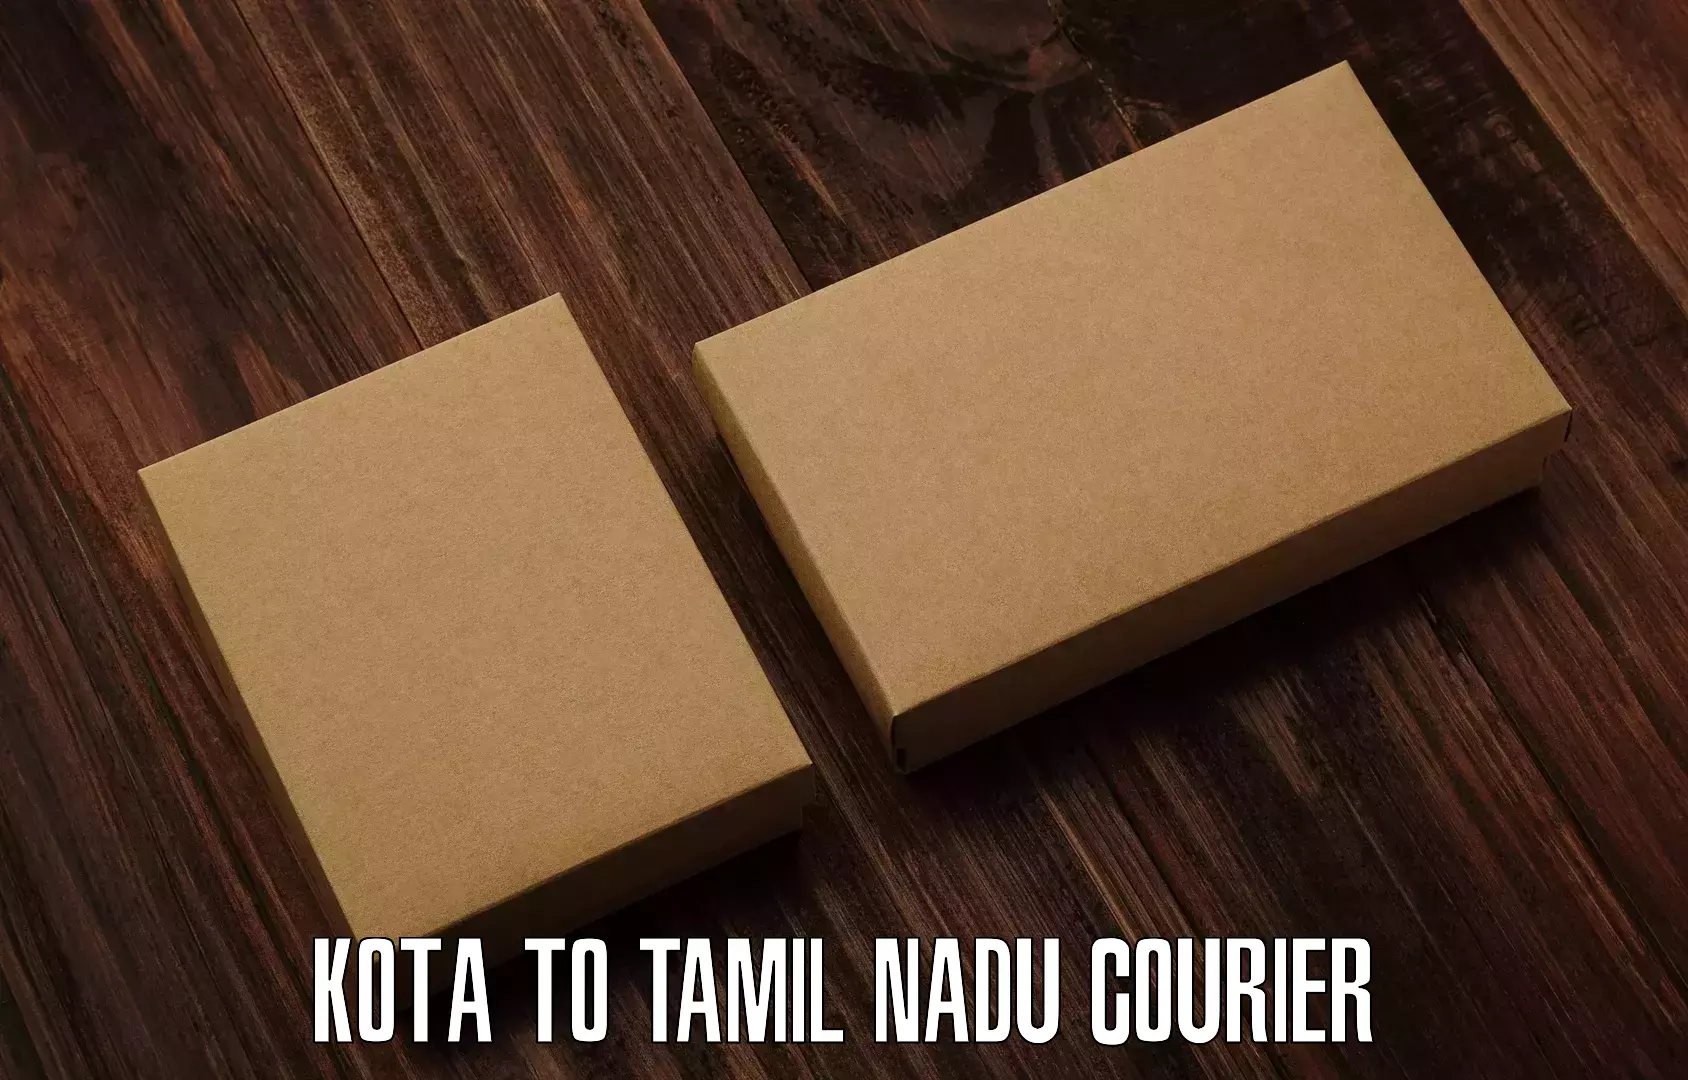 Express package handling in Kota to Tamil Nadu